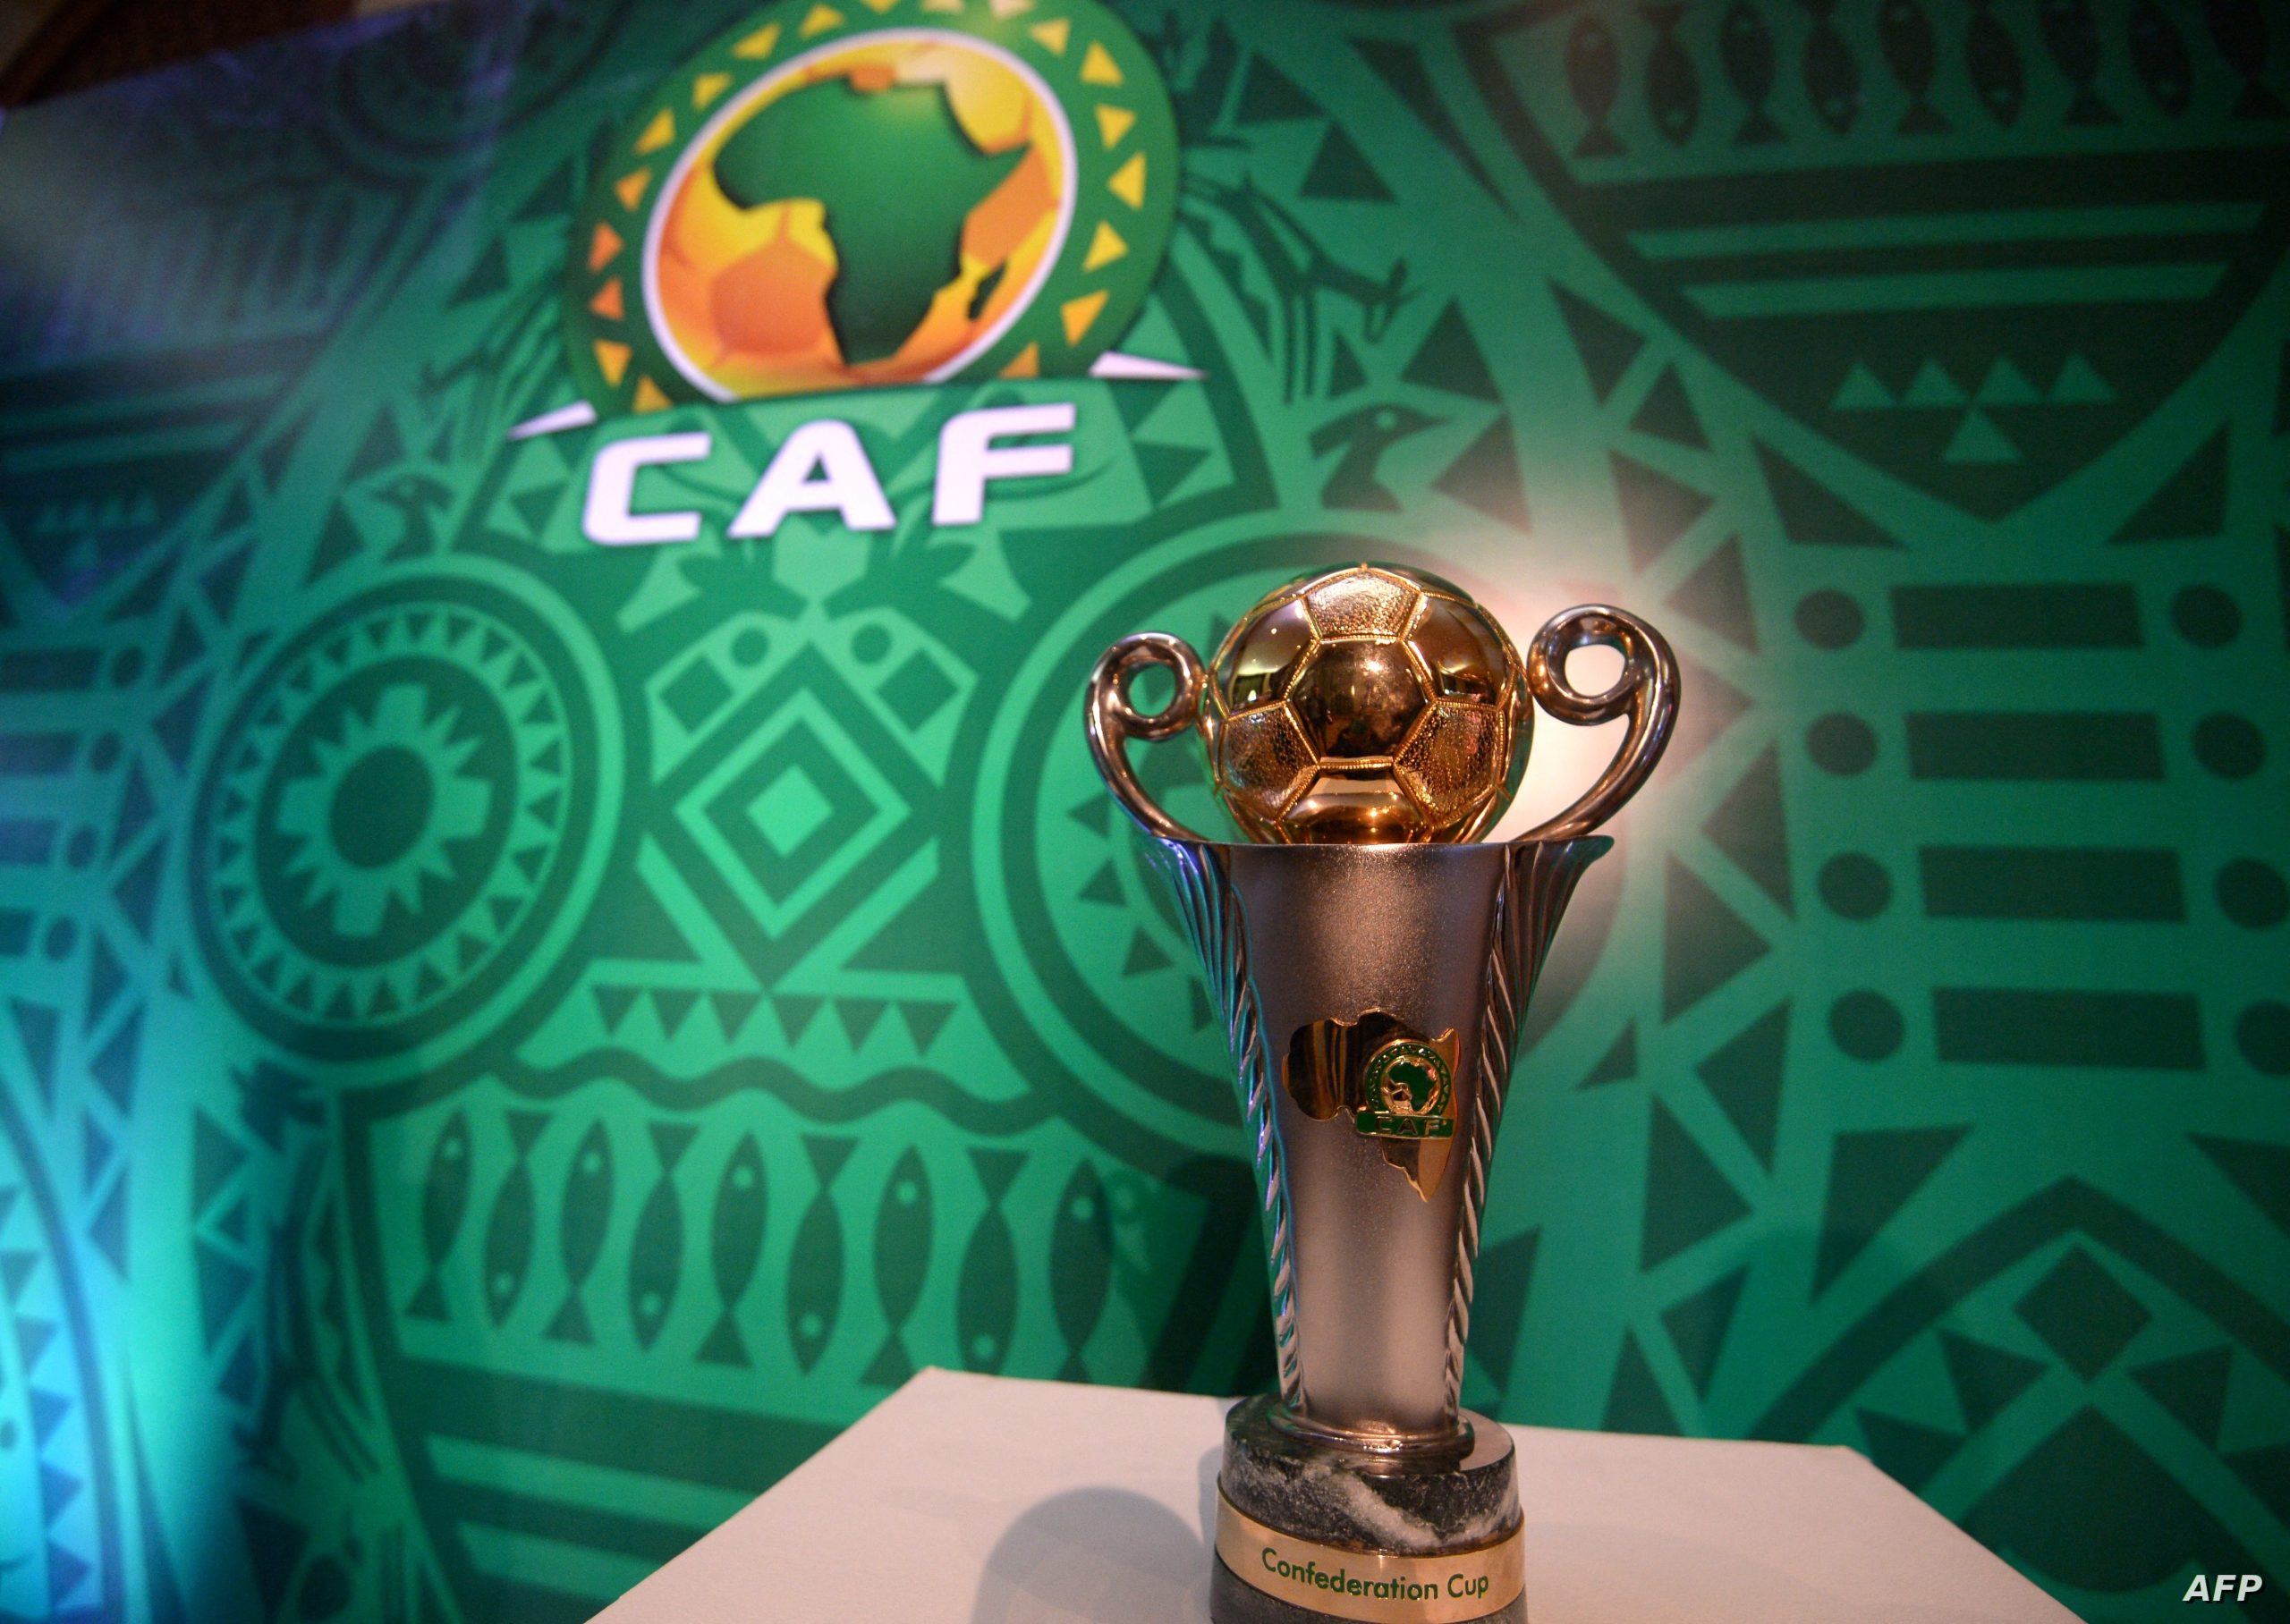 الكاف: يدين بشدة التصرفات غير المقبولة خلال نهائي كأس الكونفدرالية الإفريقية في القاهرة